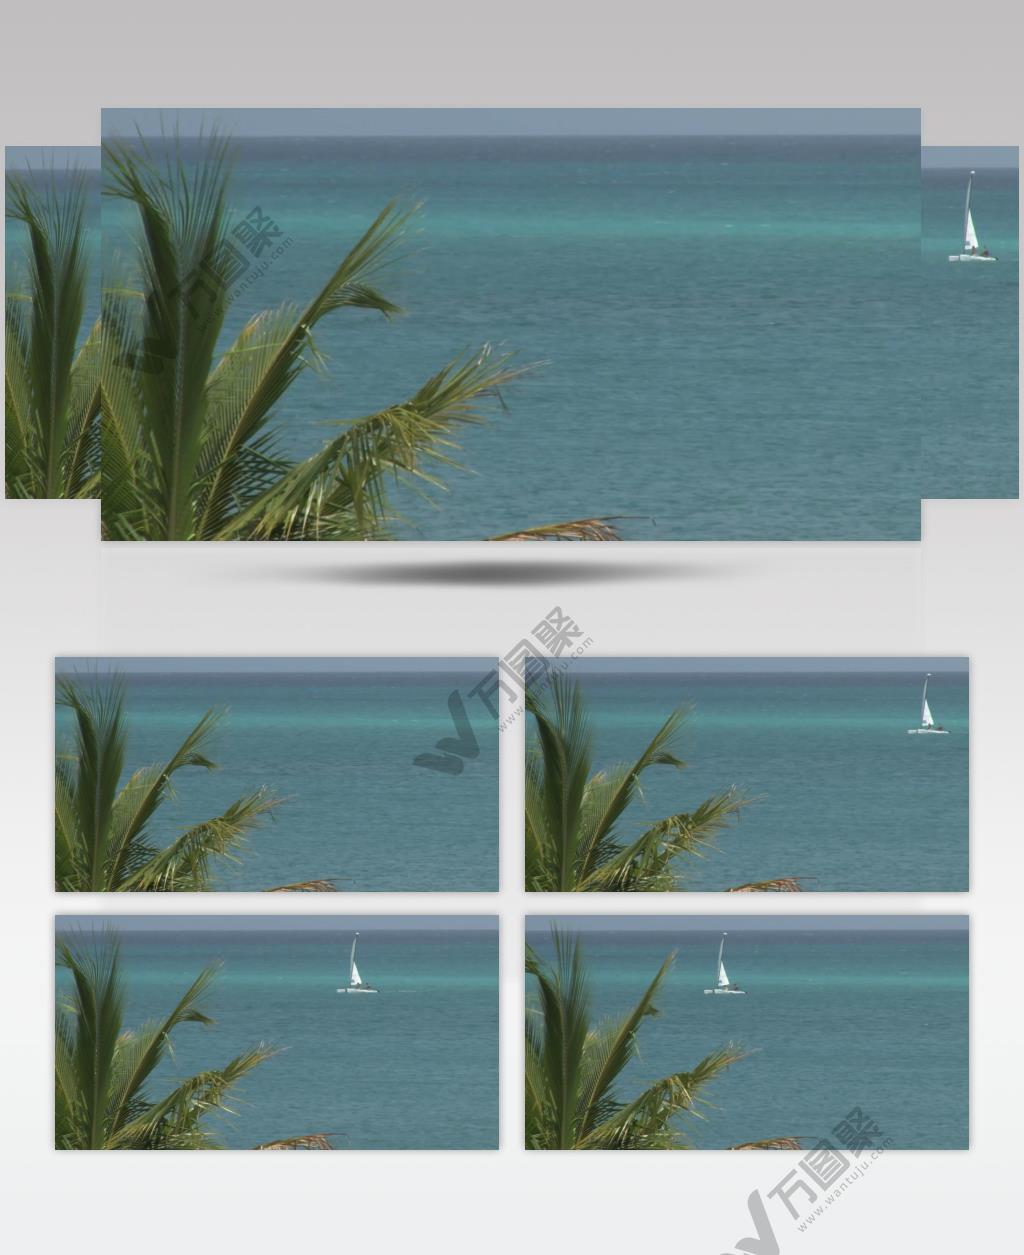 沙滩椰树 款A19152棕榈叶海洋帆船实拍视频无音乐_batch led视频背景下载